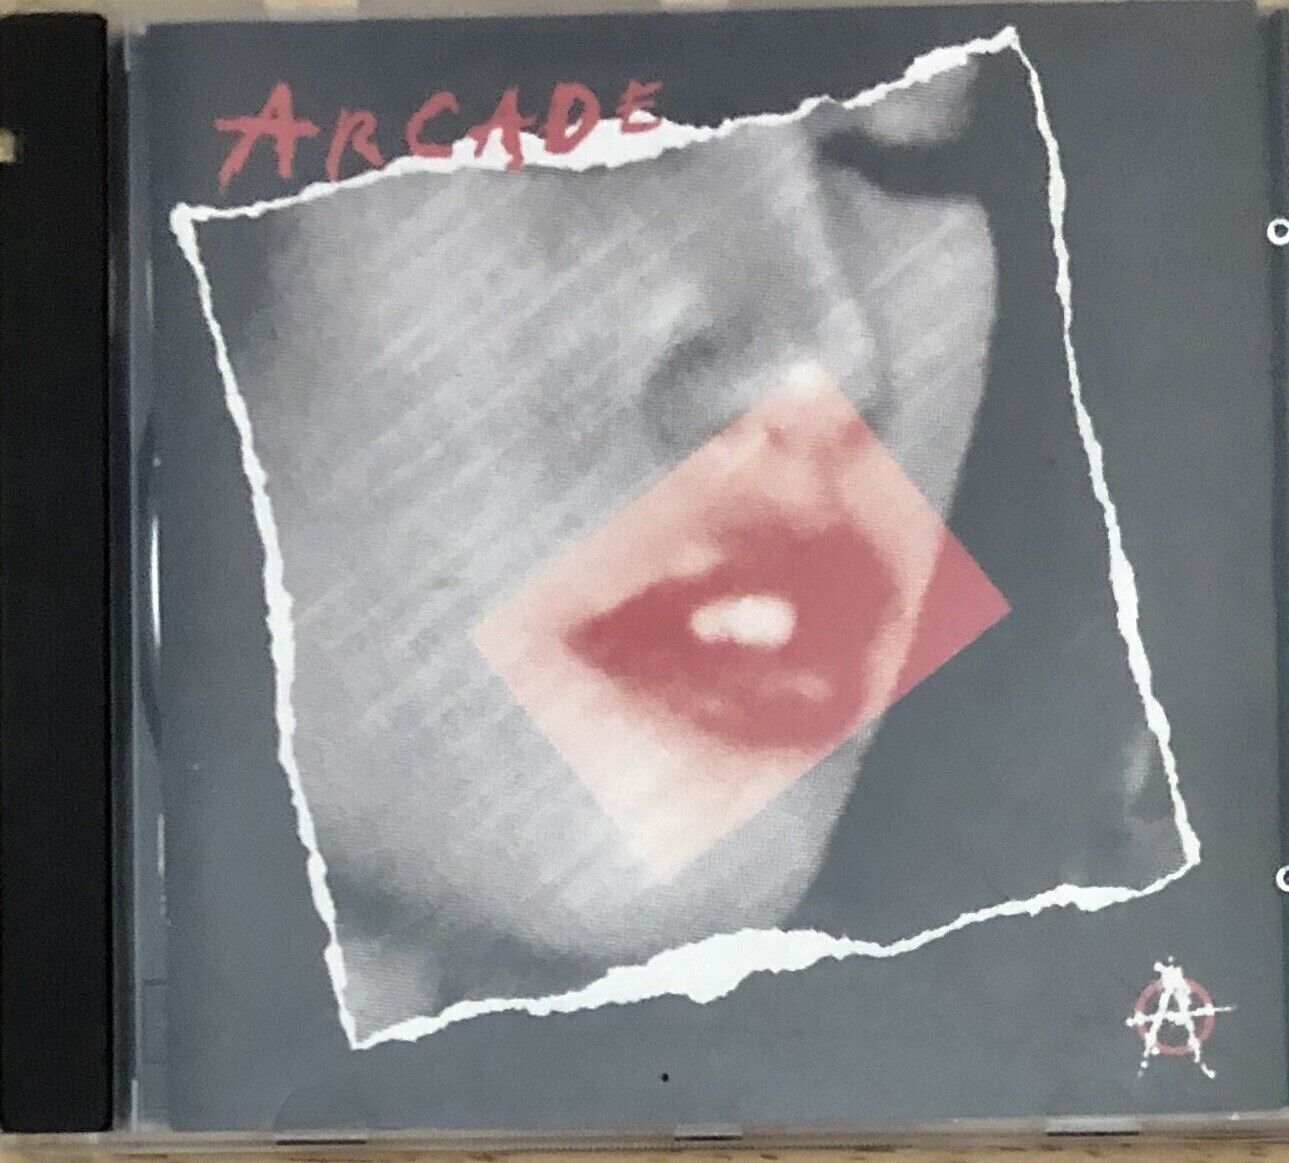 Vintage Arcade - Self-Titled (1993, CDs)